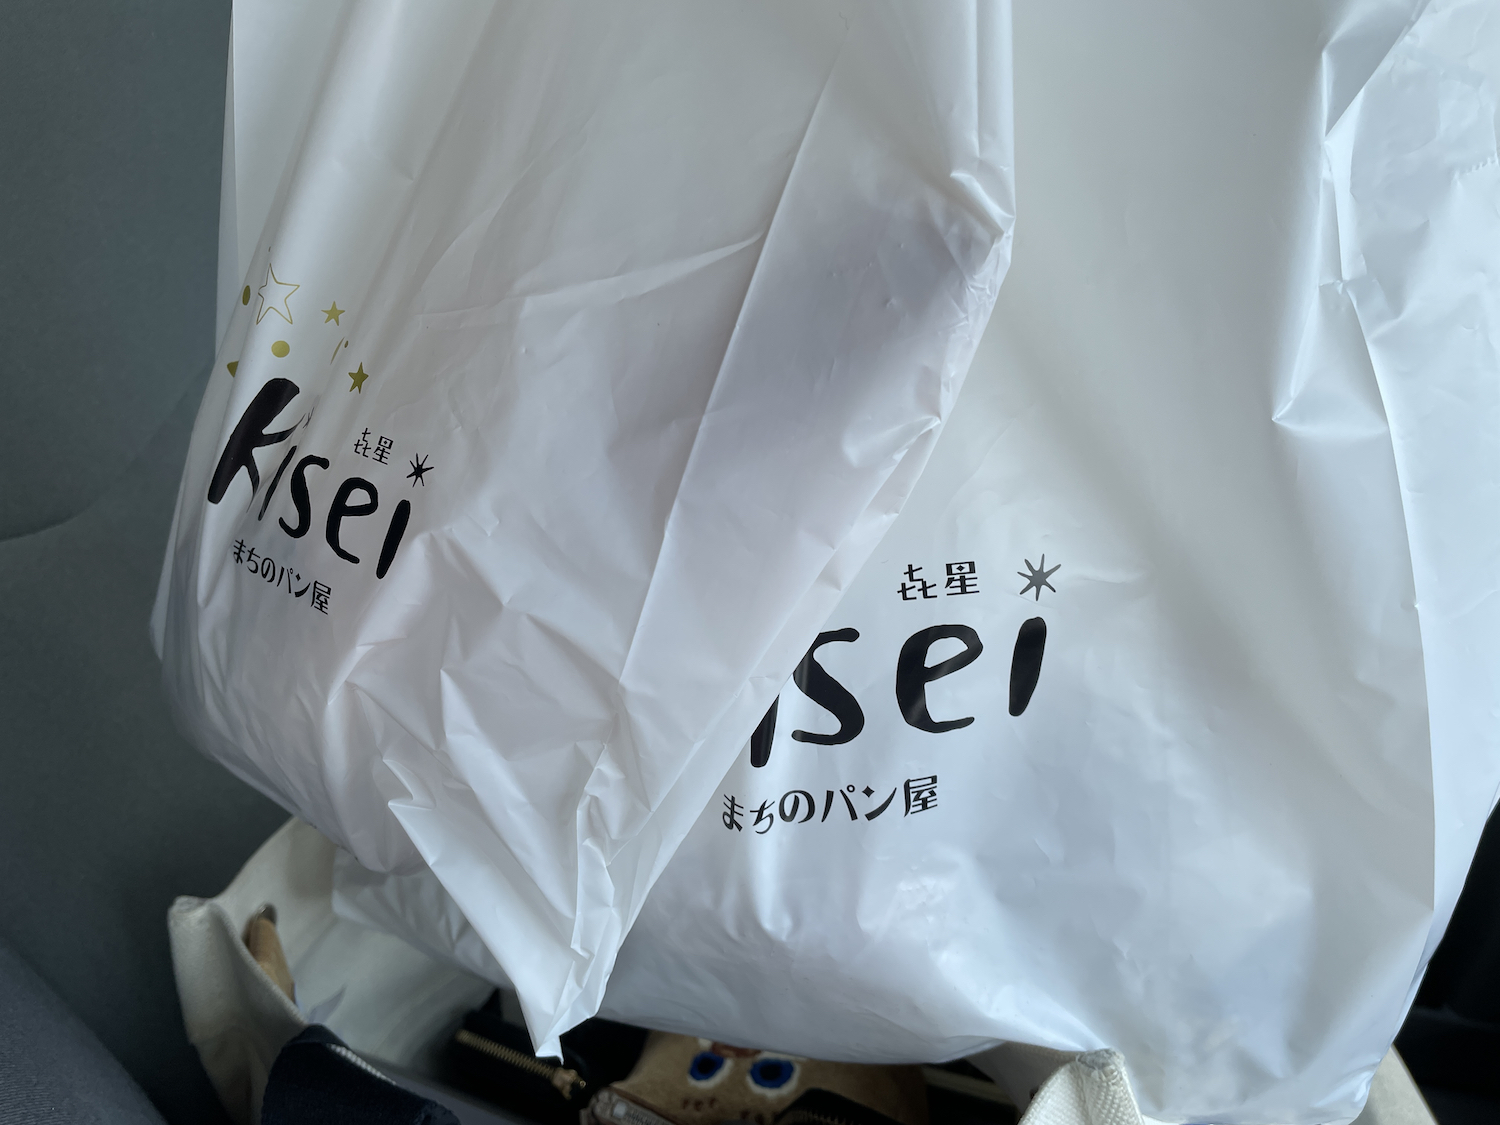 まちのパン屋 Kisei 㐂星１